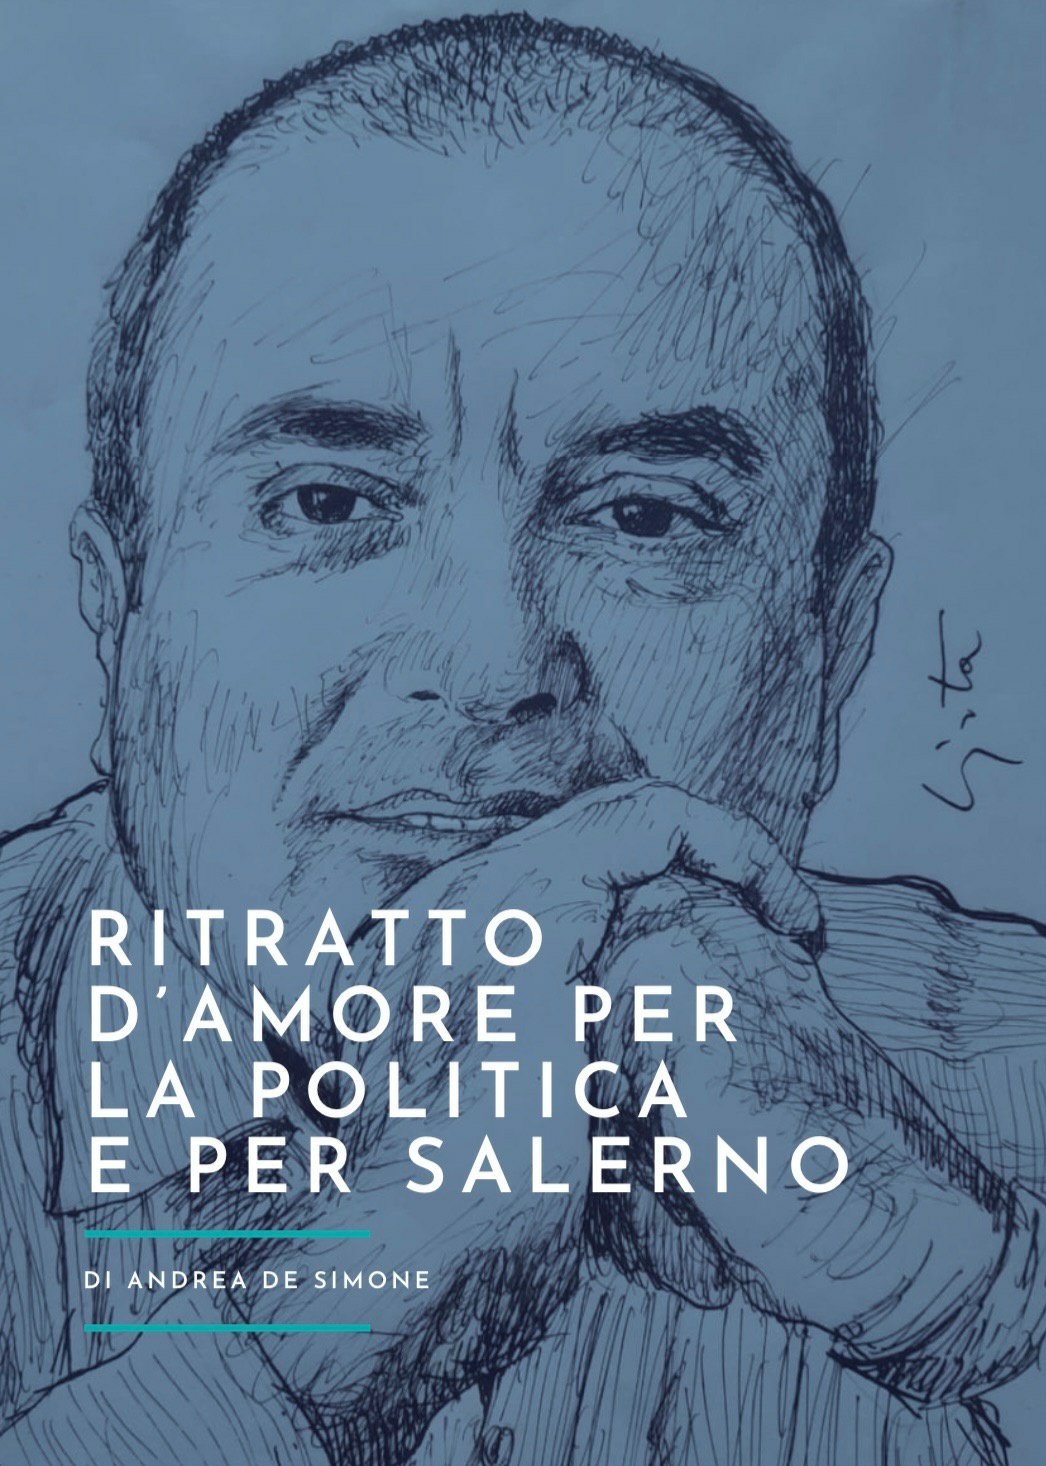 Andrea De Simone, “Ritratto d’amore per la Politica e per Salerno”